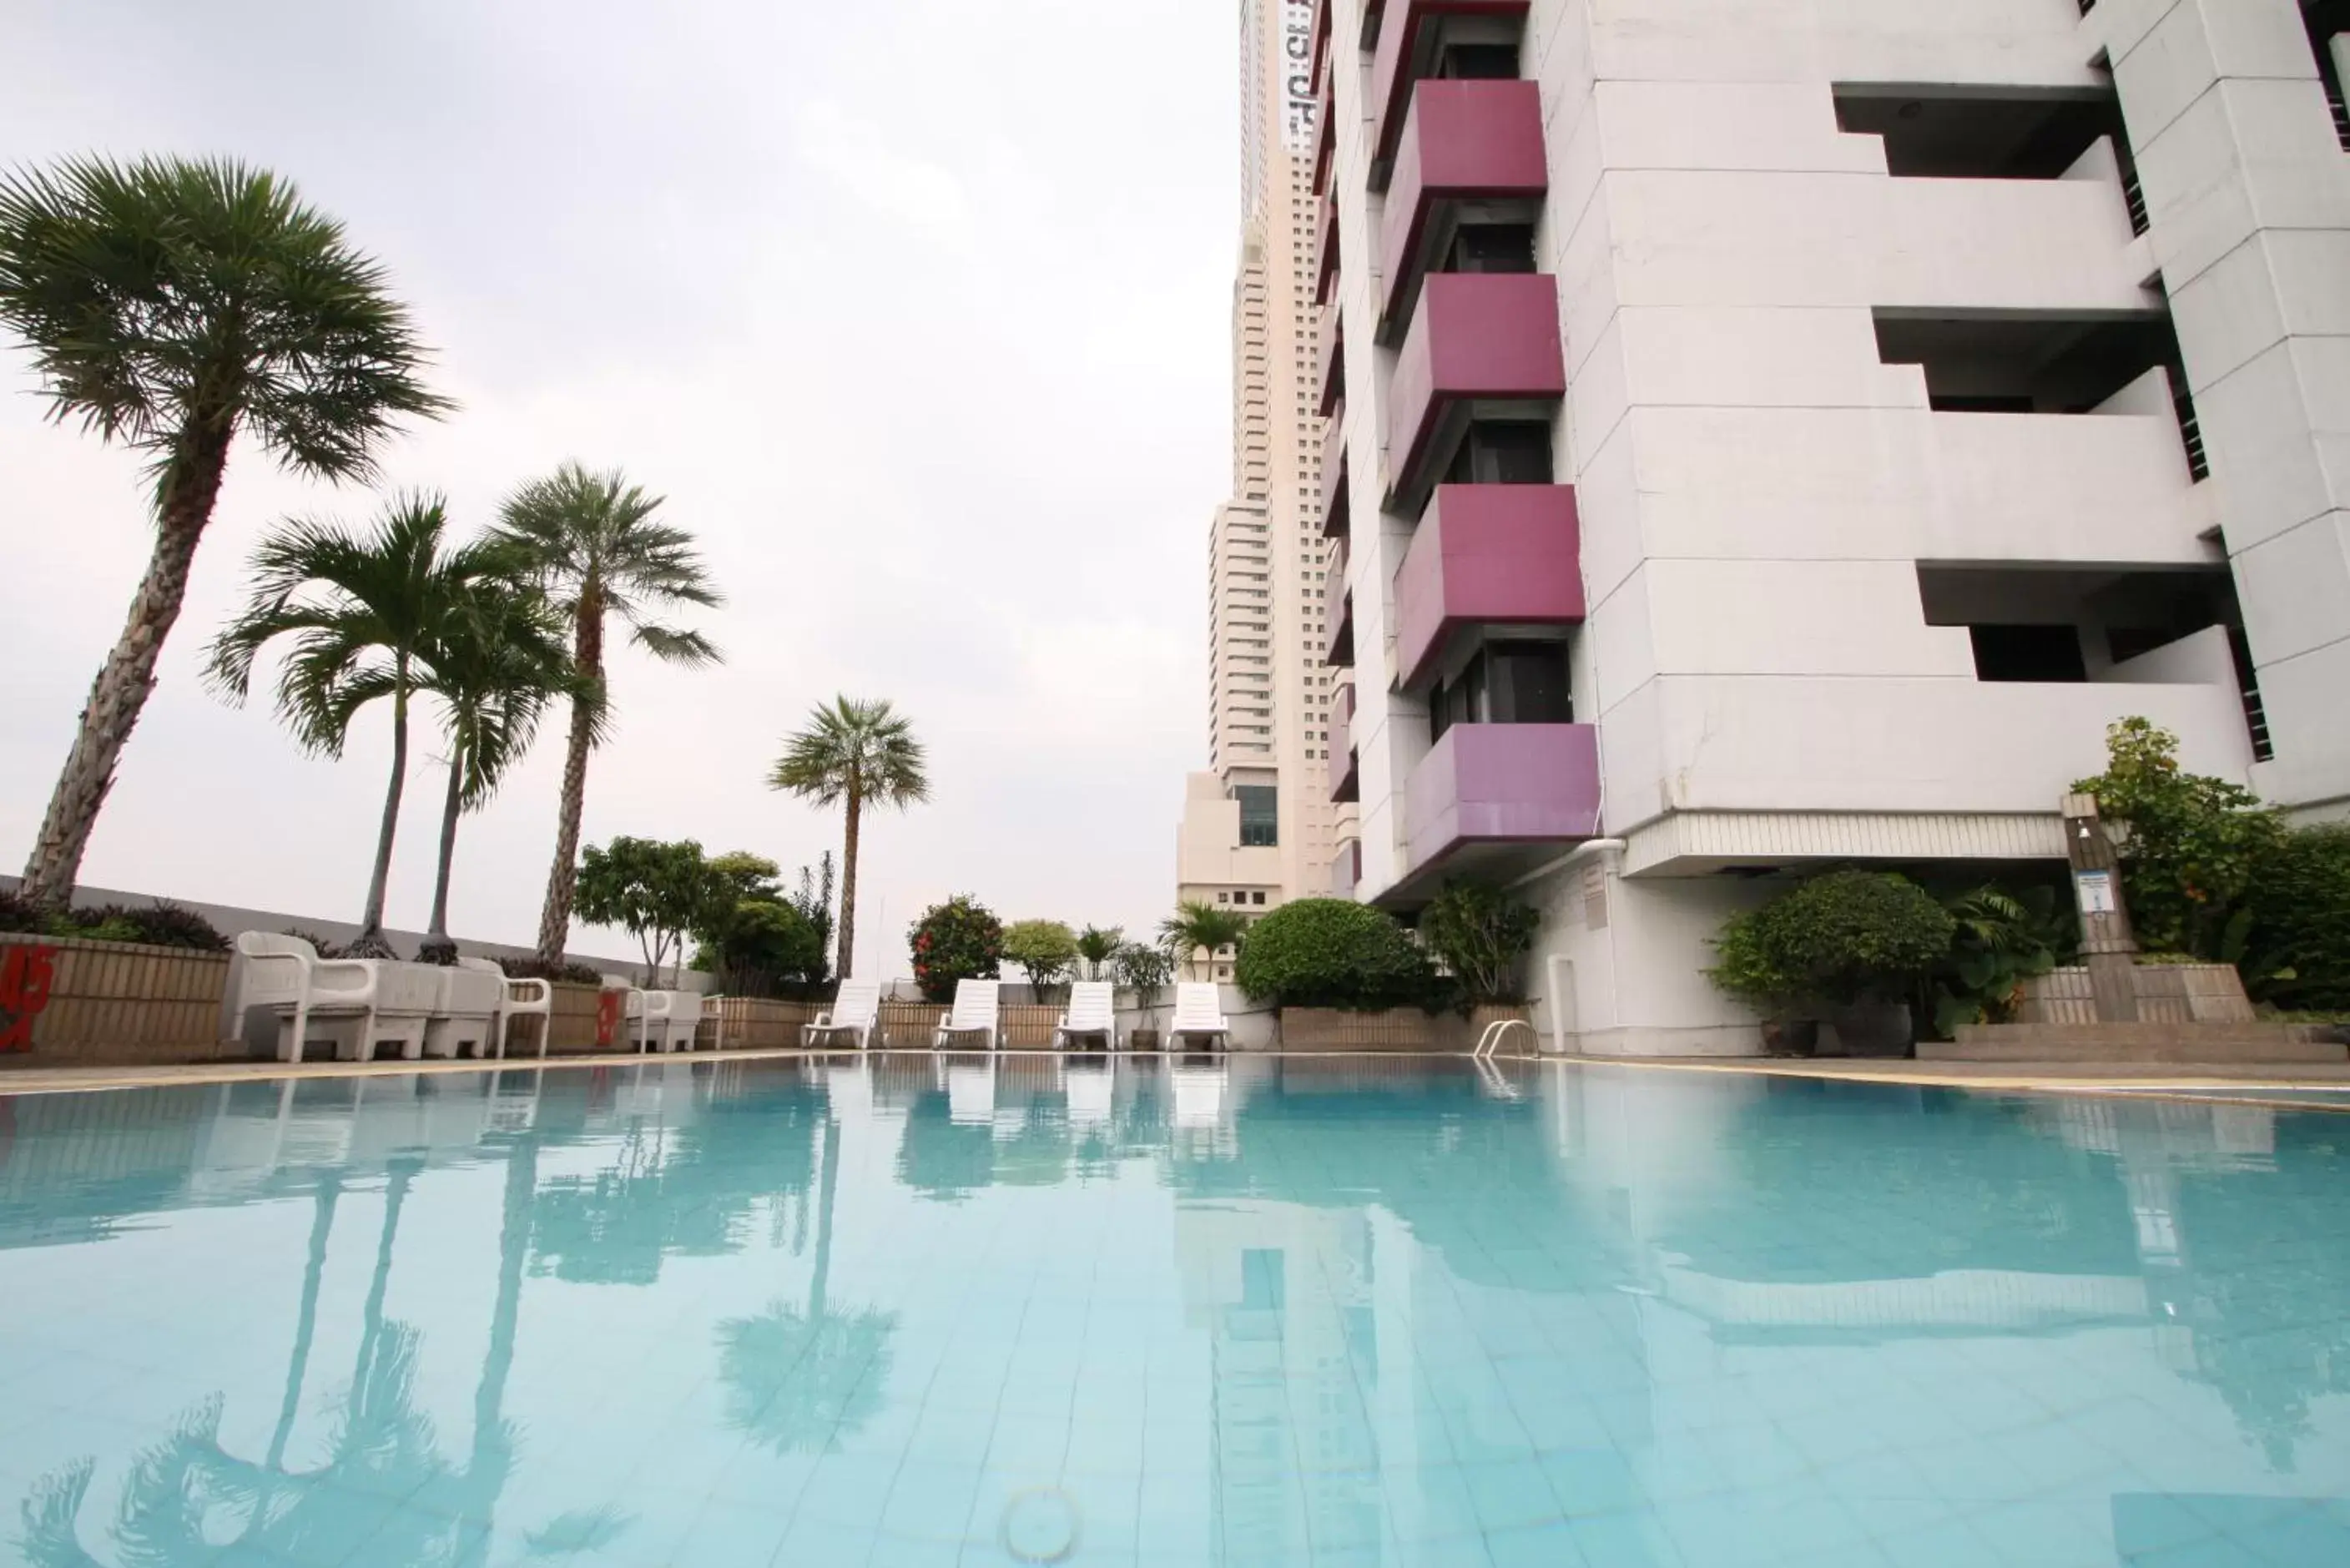 Swimming Pool in Baiyoke Suite Hotel